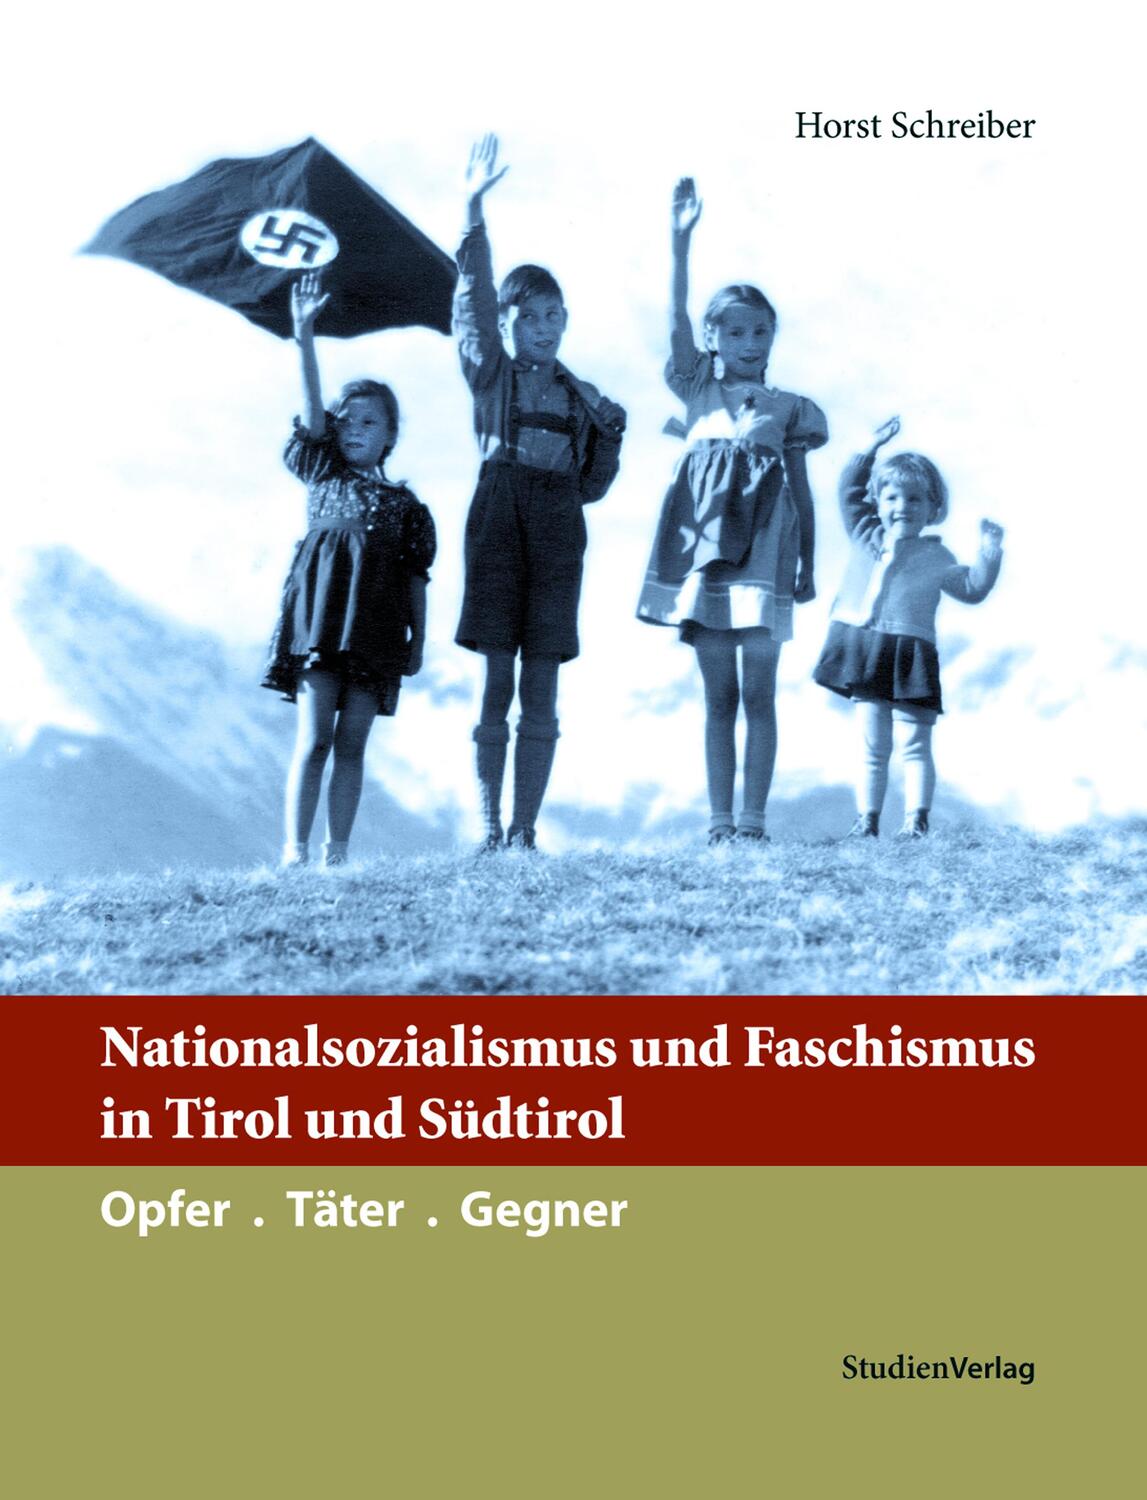 Nationalsozialismus und Faschismus in Tirol und Südtirol - Schreiber, Horst